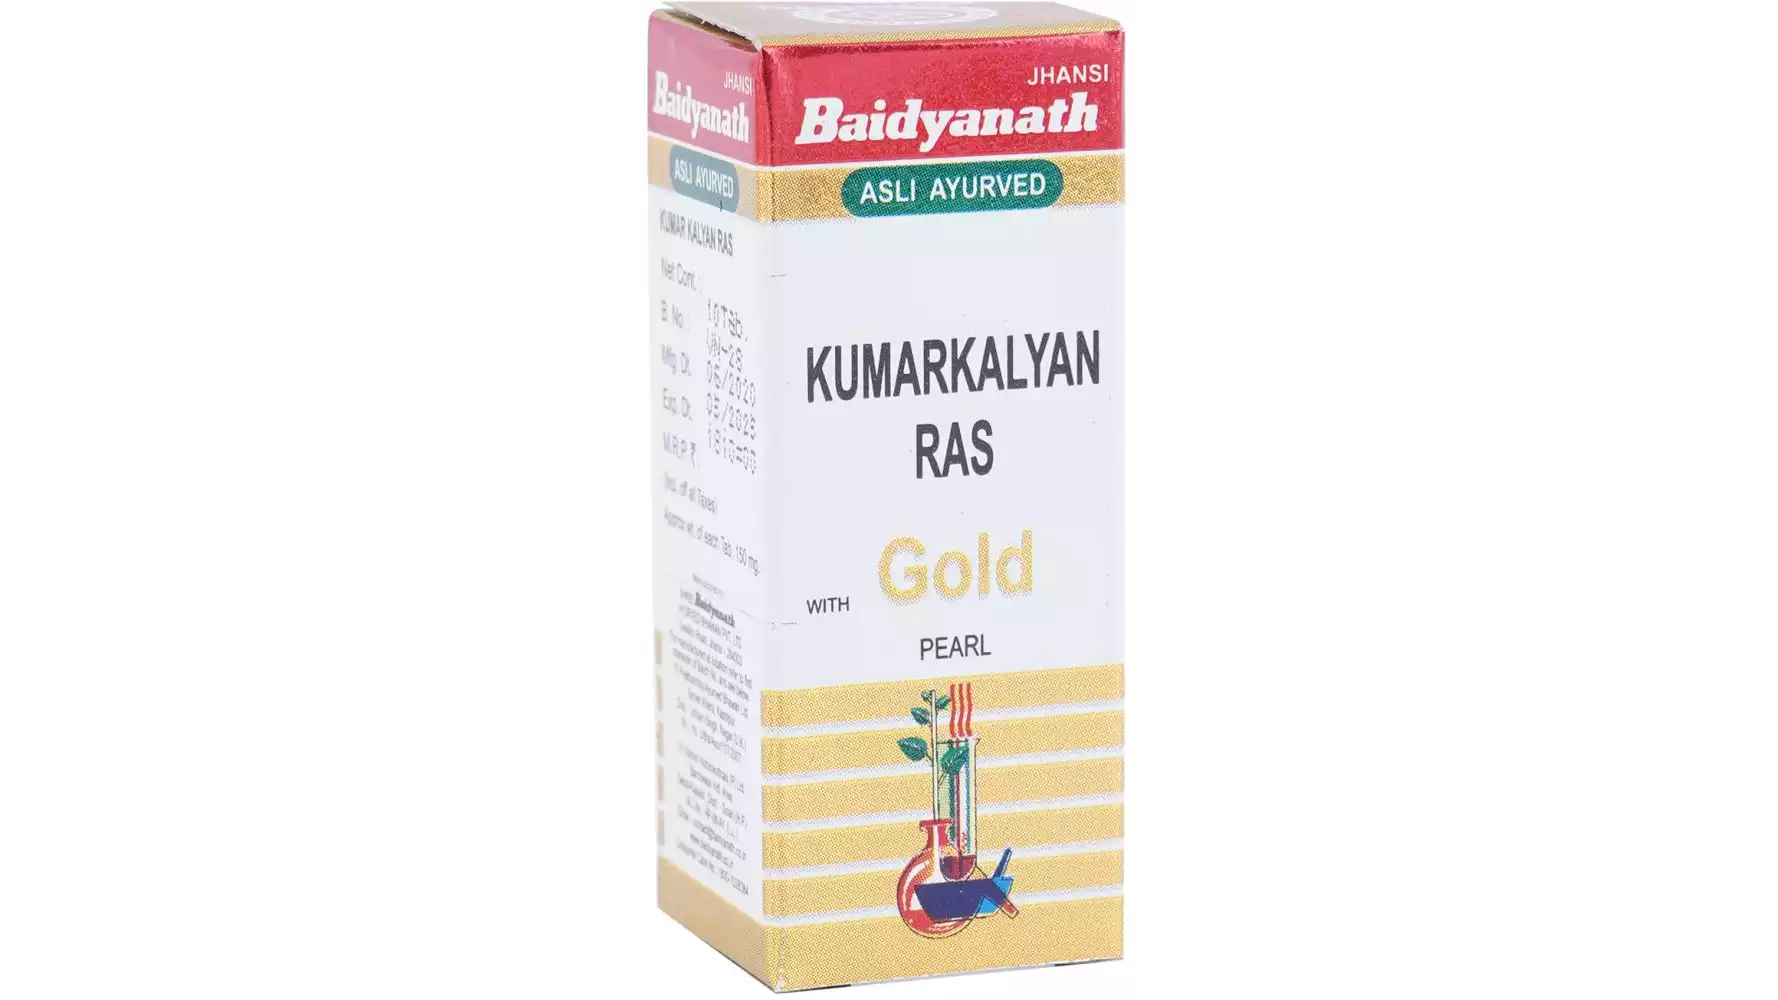 Baidyanath Kumar Kalyan Ras (Swarna Moti Yukta) (10tab)